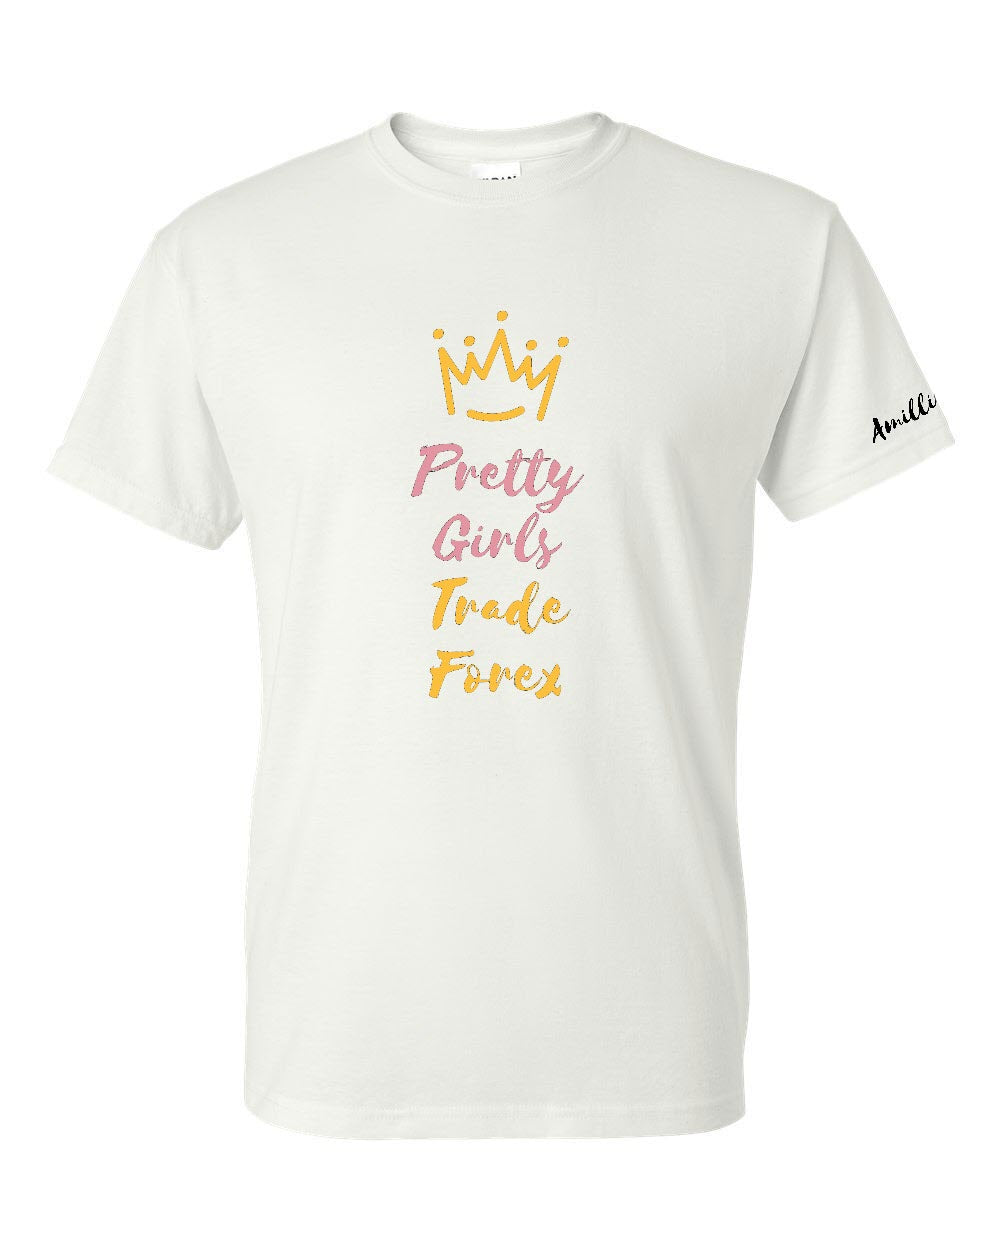 Pretty Girls Trade Forex - MultiColor